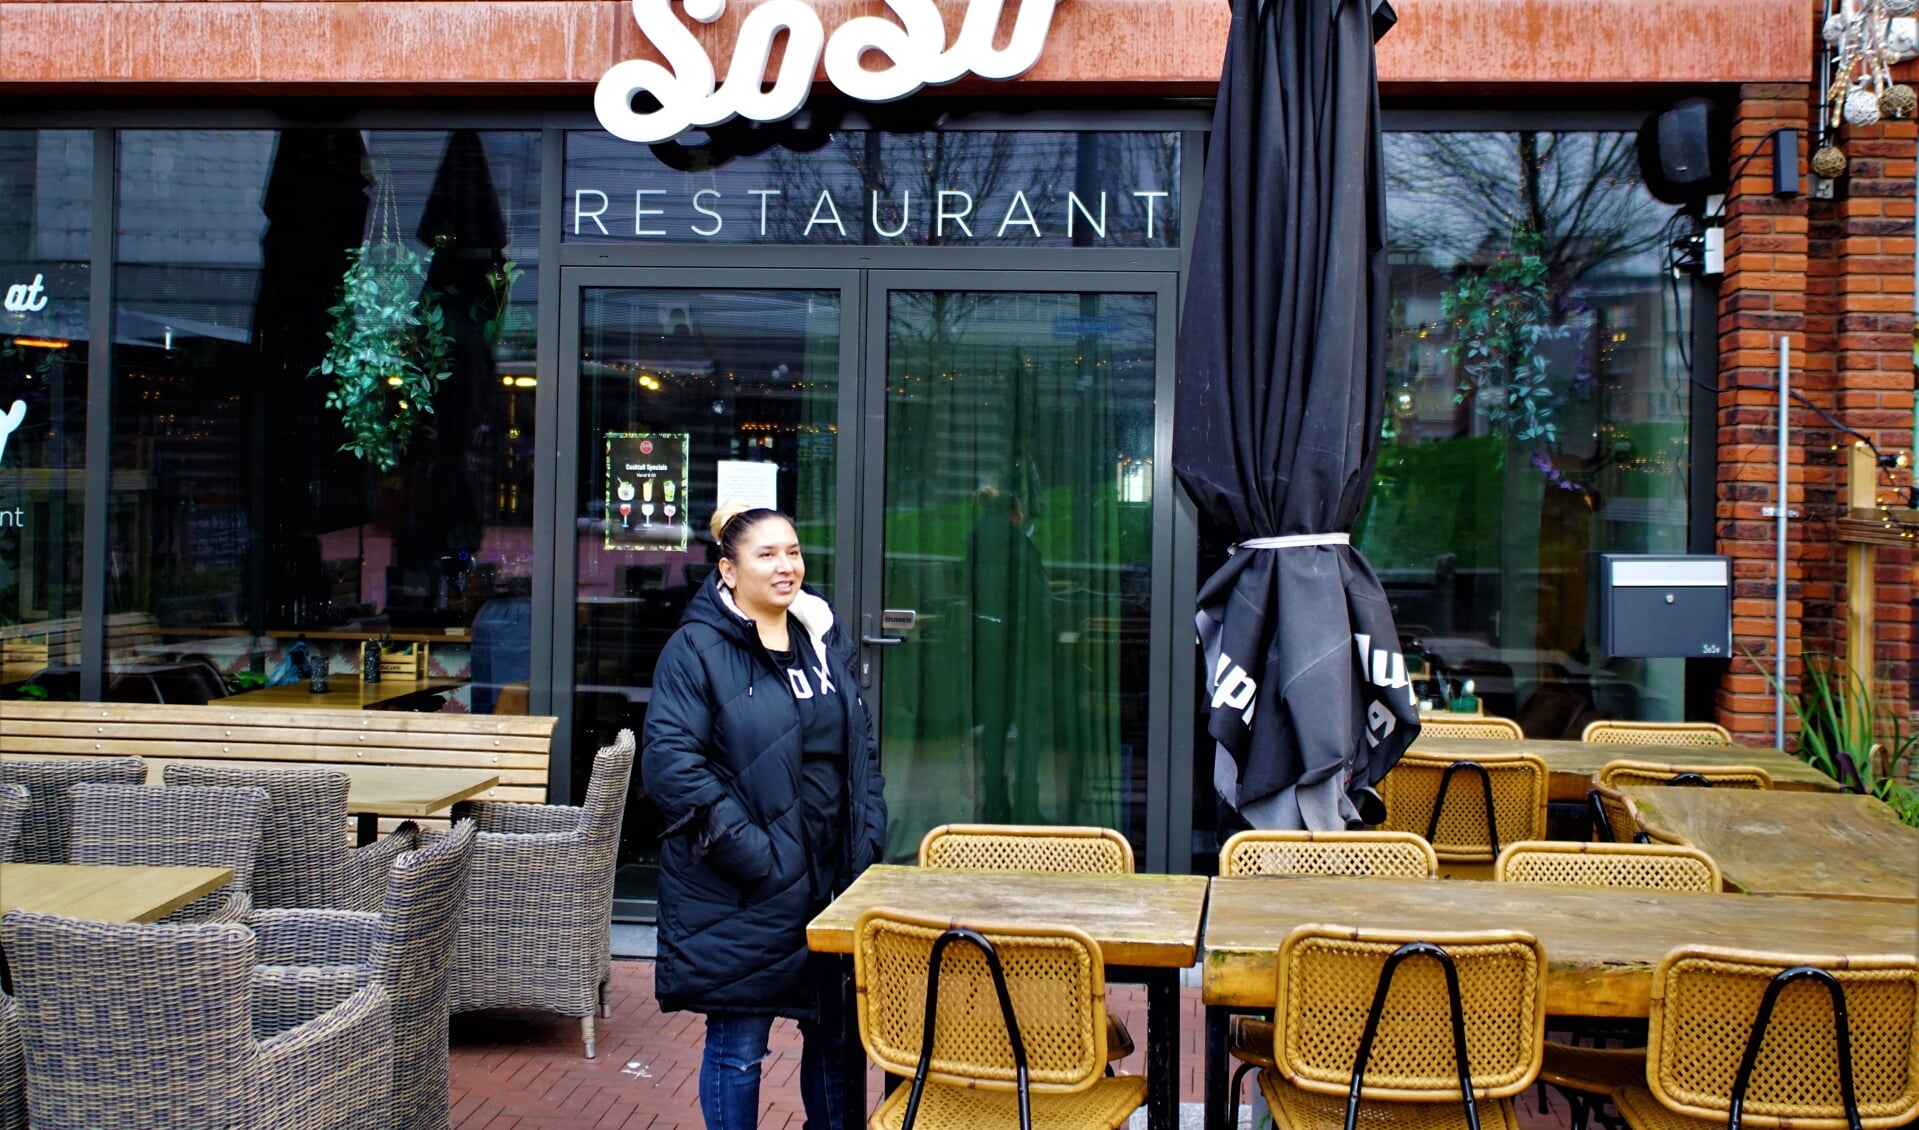 Brigitta Kraal wil graag een doorstart maken met soulfoodrestaurant SoSo. 